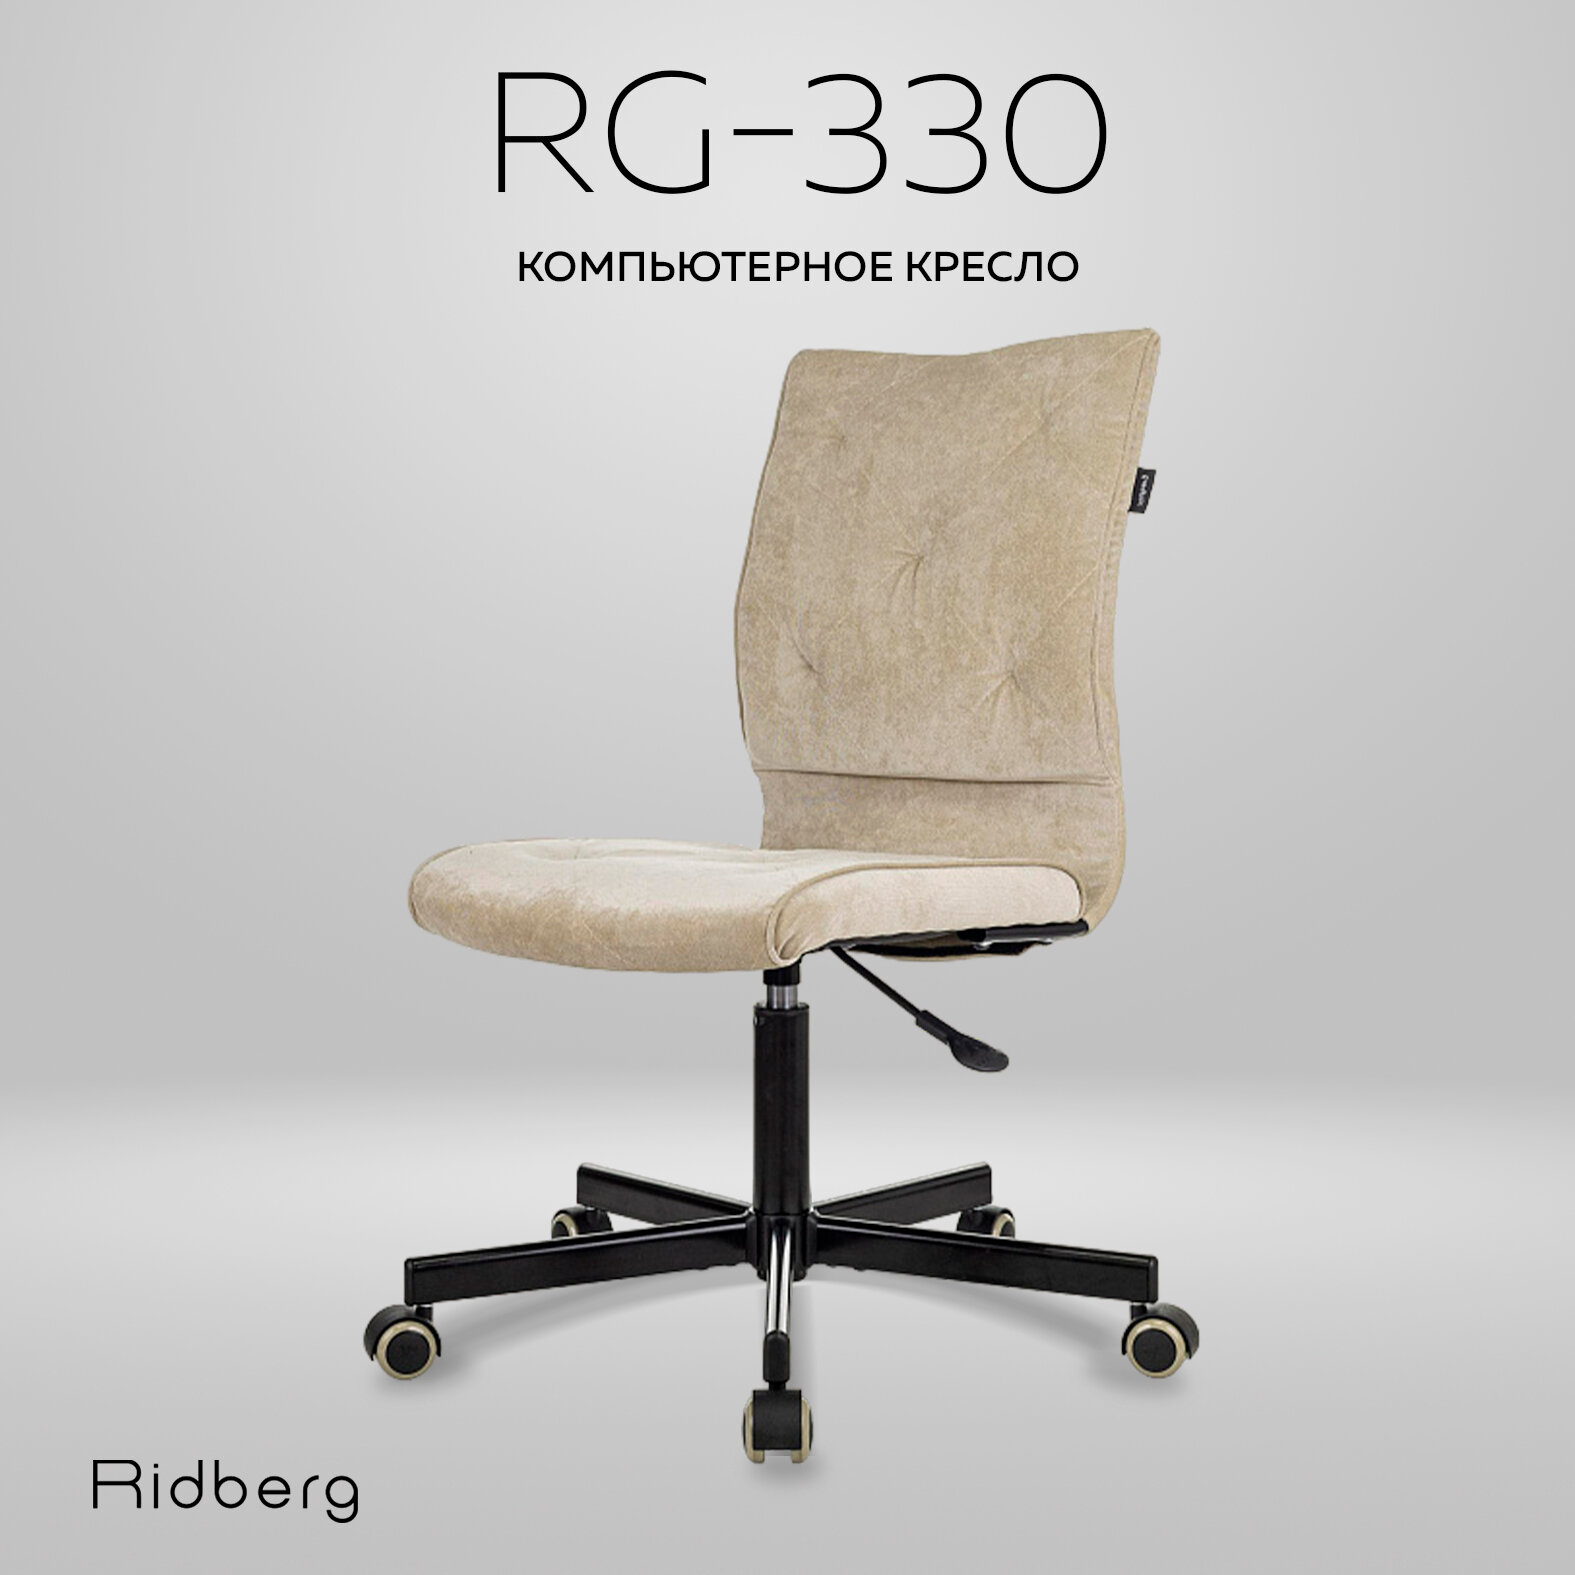 Кресло компьютерное Ridberg RG 330 V, бежевое, велюр. Офисное кресло на колесах